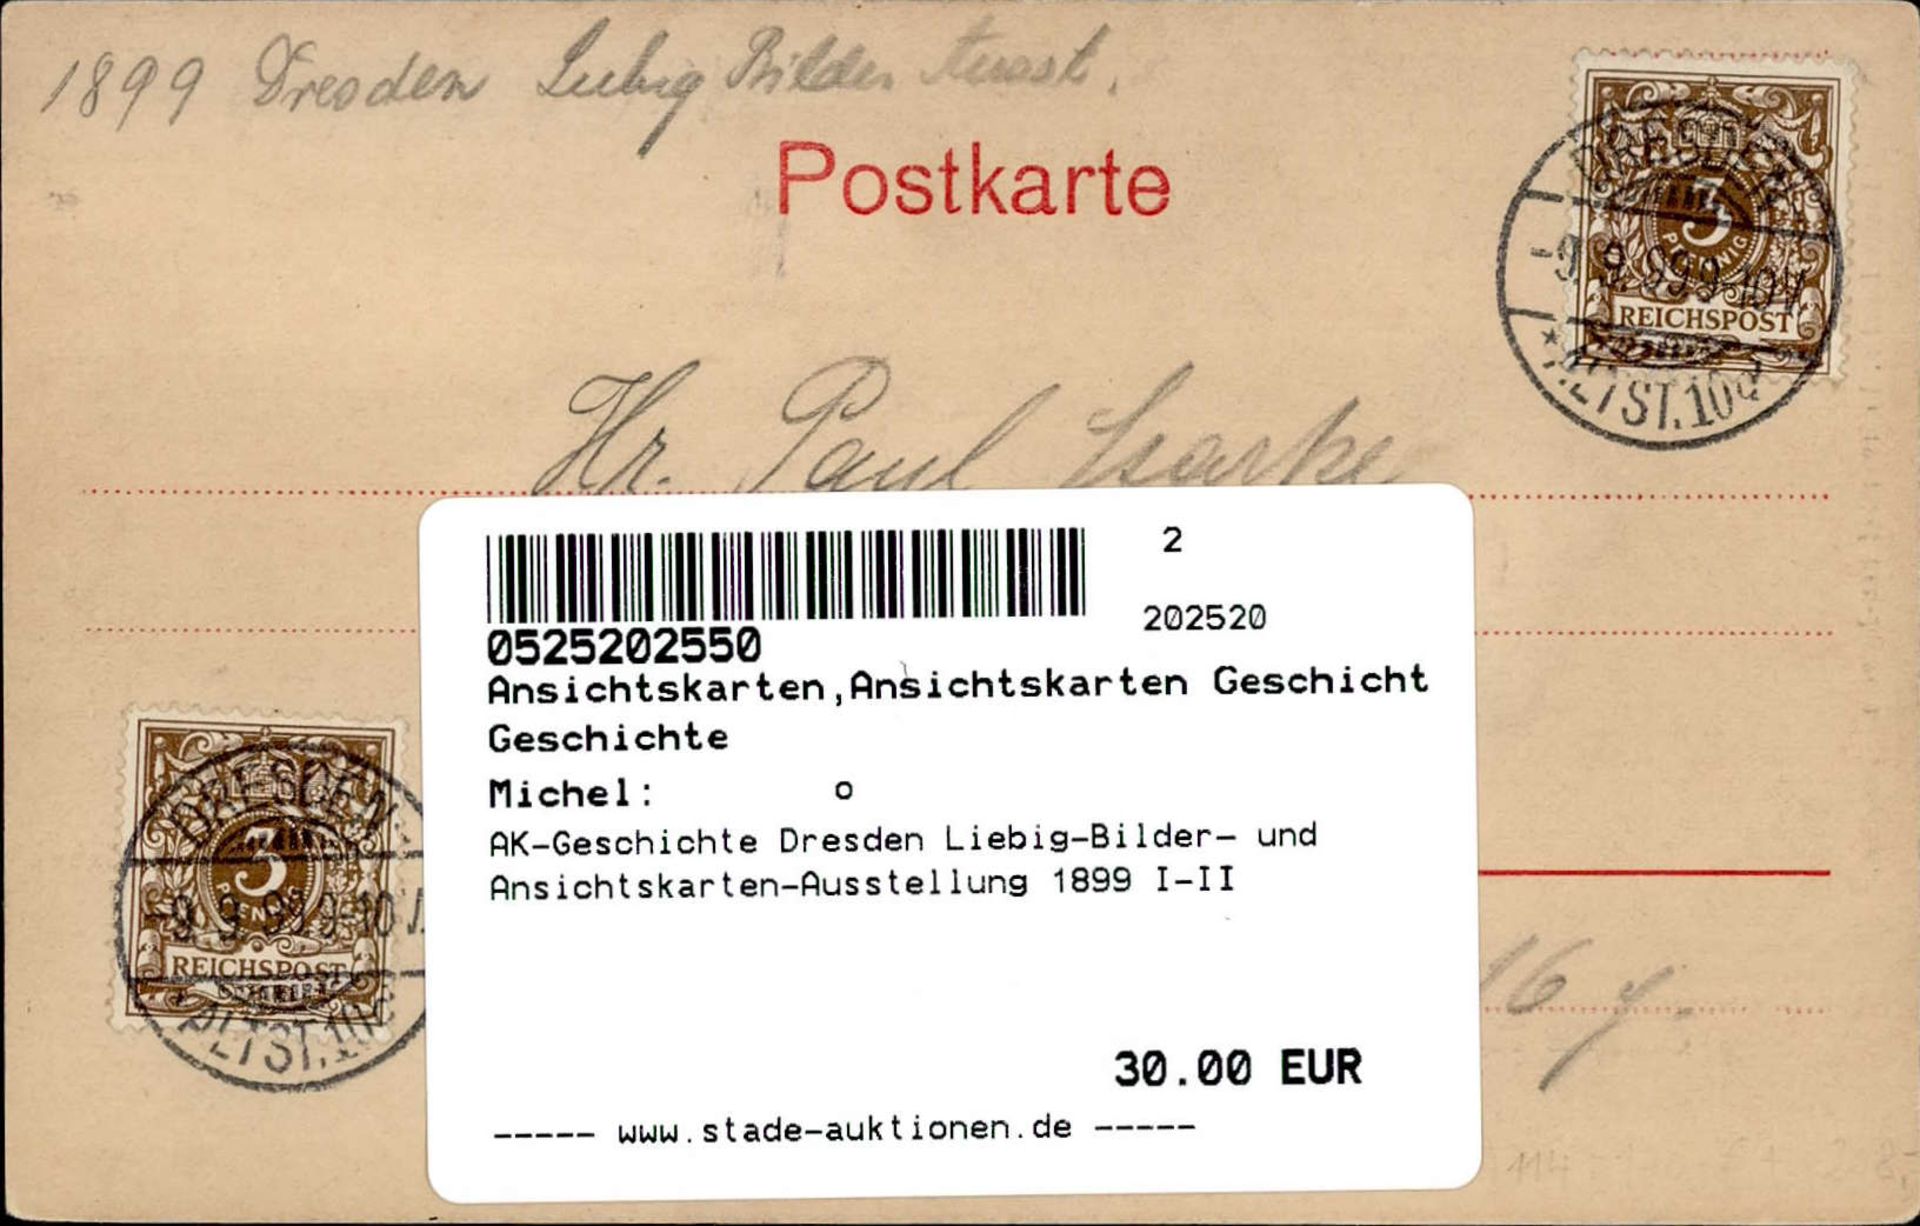 AK-Geschichte Dresden Liebig-Bilder- und Ansichtskarten-Ausstellung 1899 I-II - Bild 2 aus 2